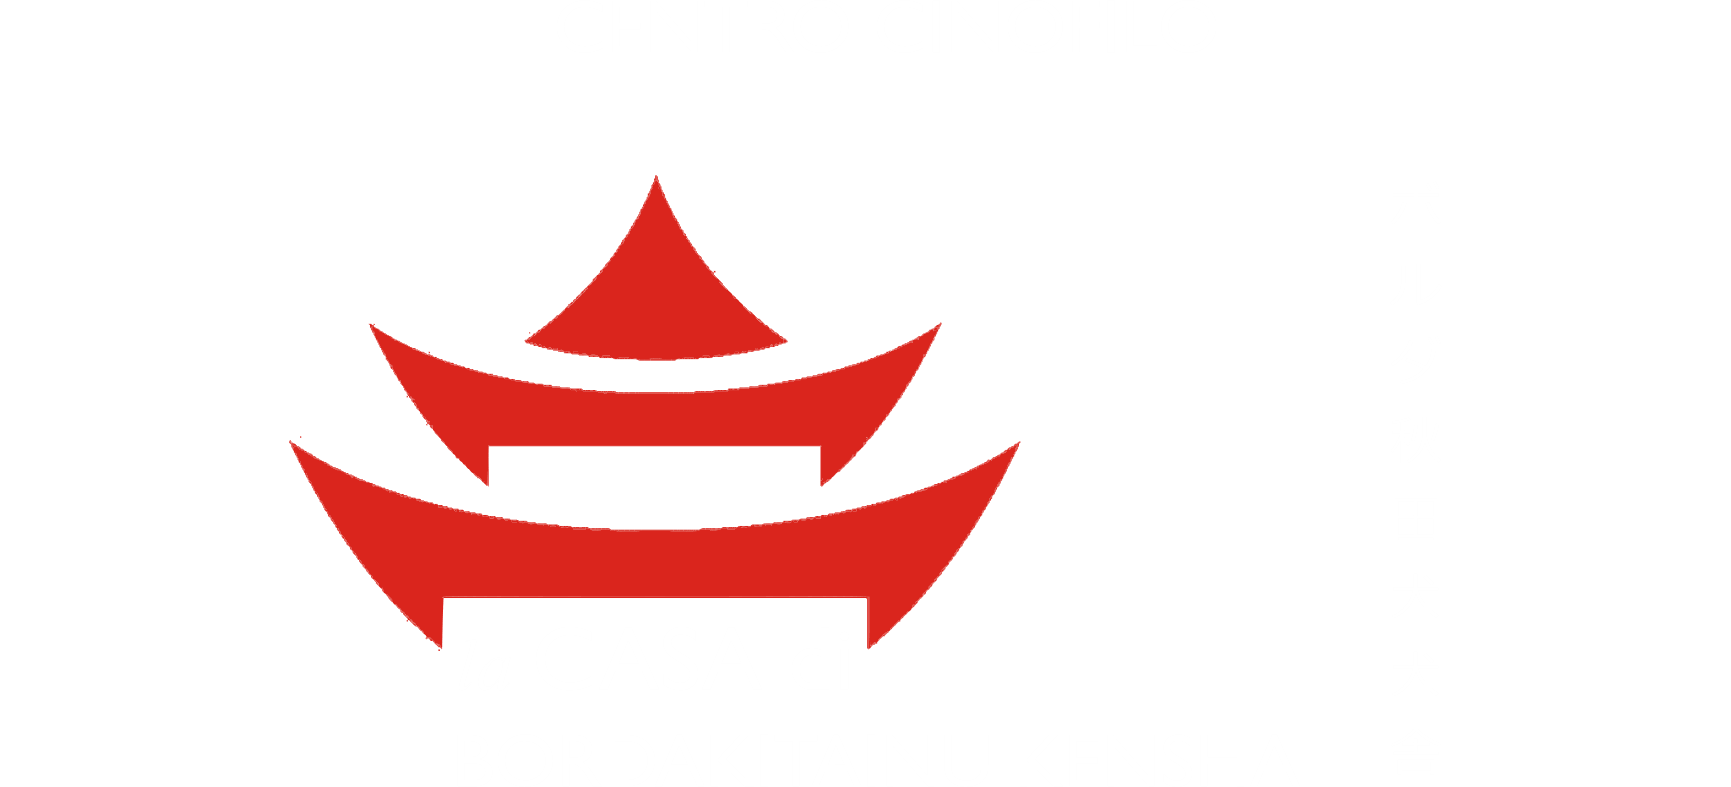 Centro Cinofilo Bordakitainu Kensha